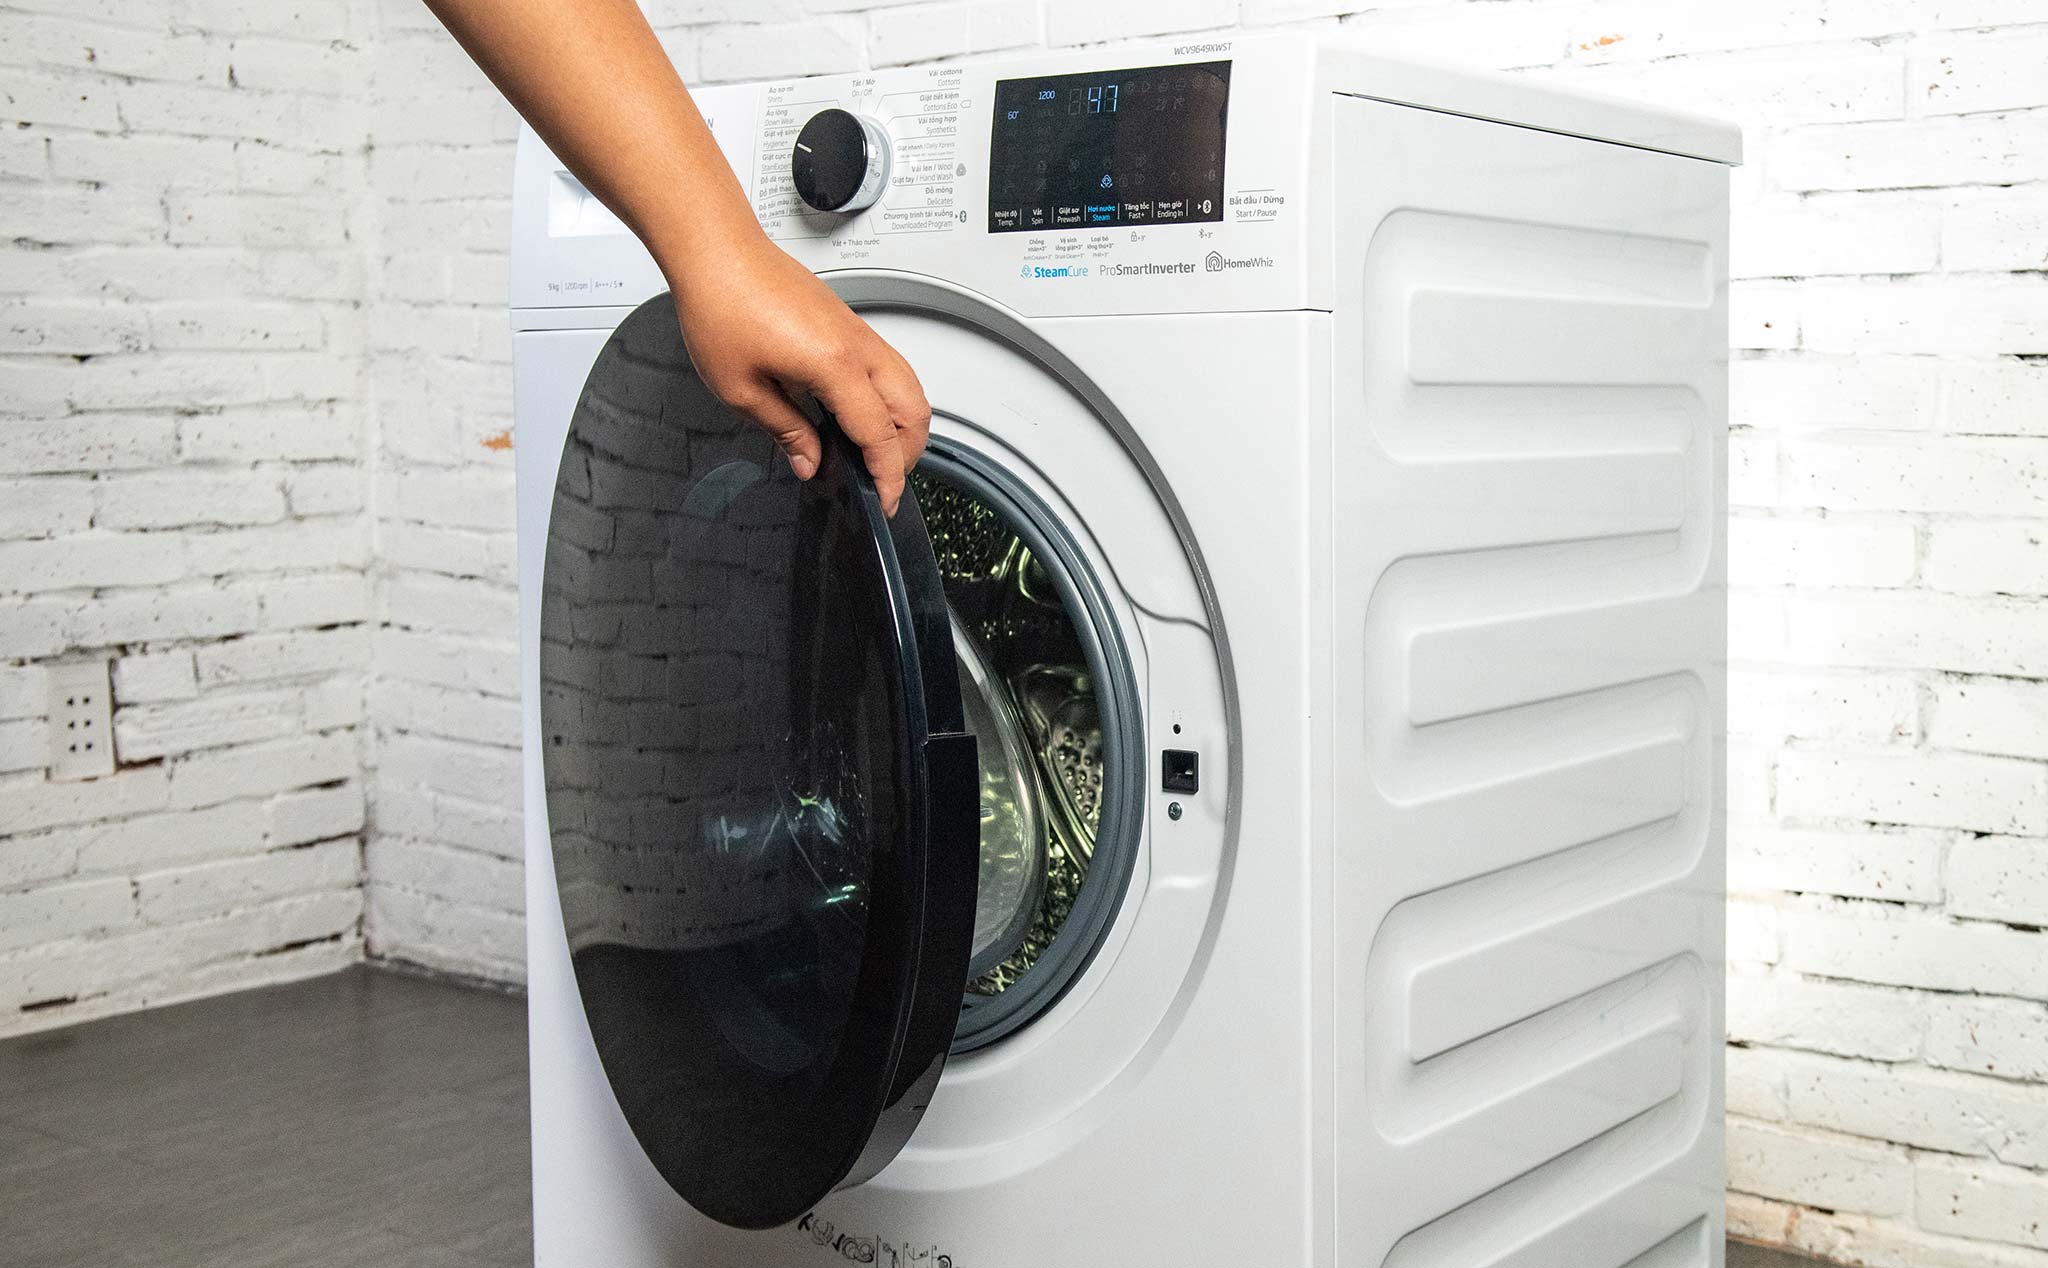 Trên tay máy giặt lồng ngang Beko với công nghệ giặt hơi nước SteamCure